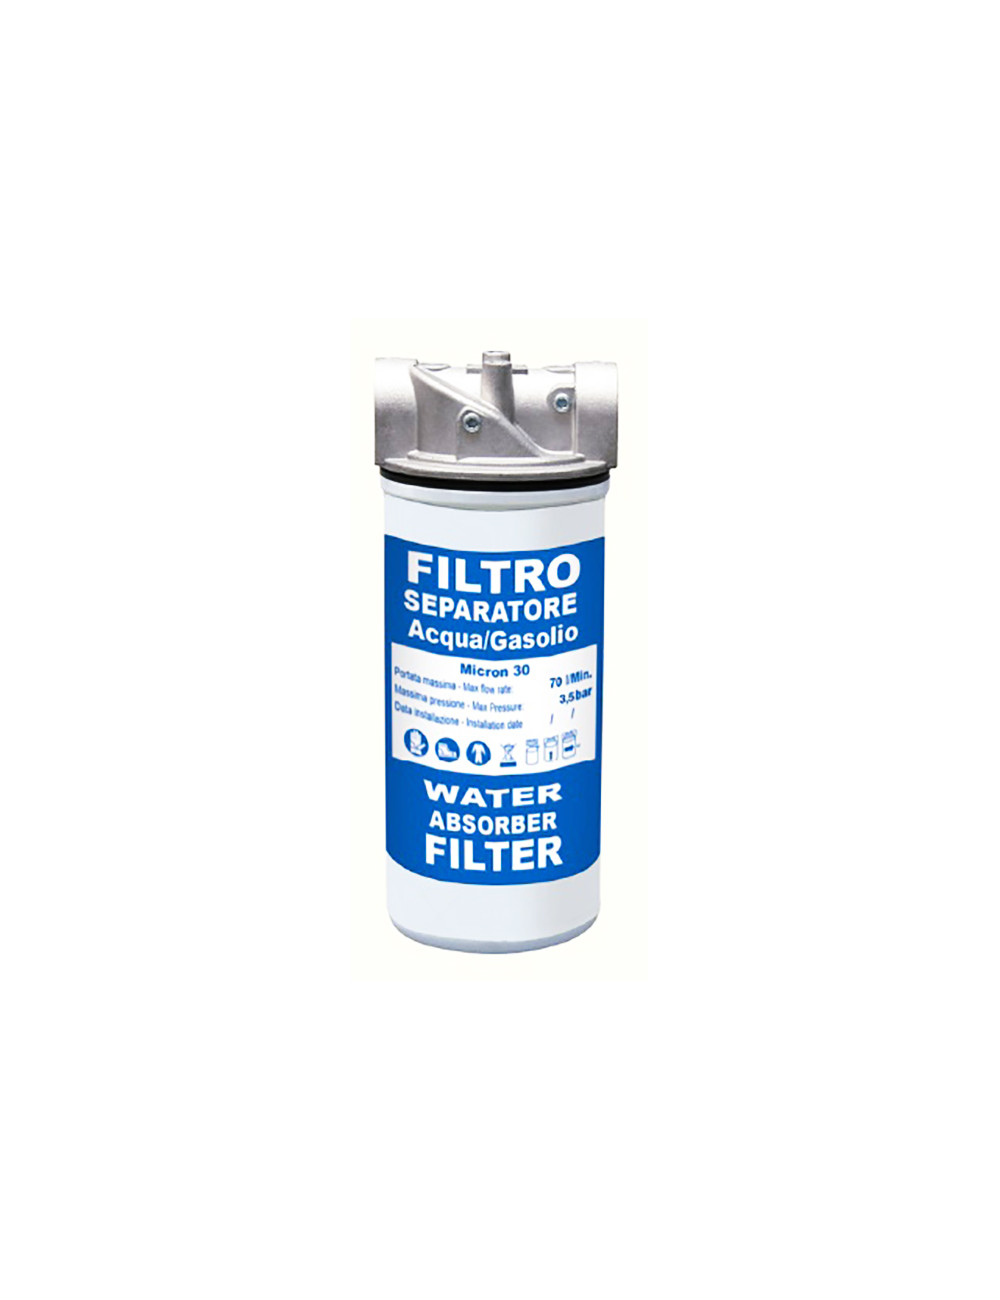 Filtro separatore acqua/gasolio 30 micron Maestri cod 950